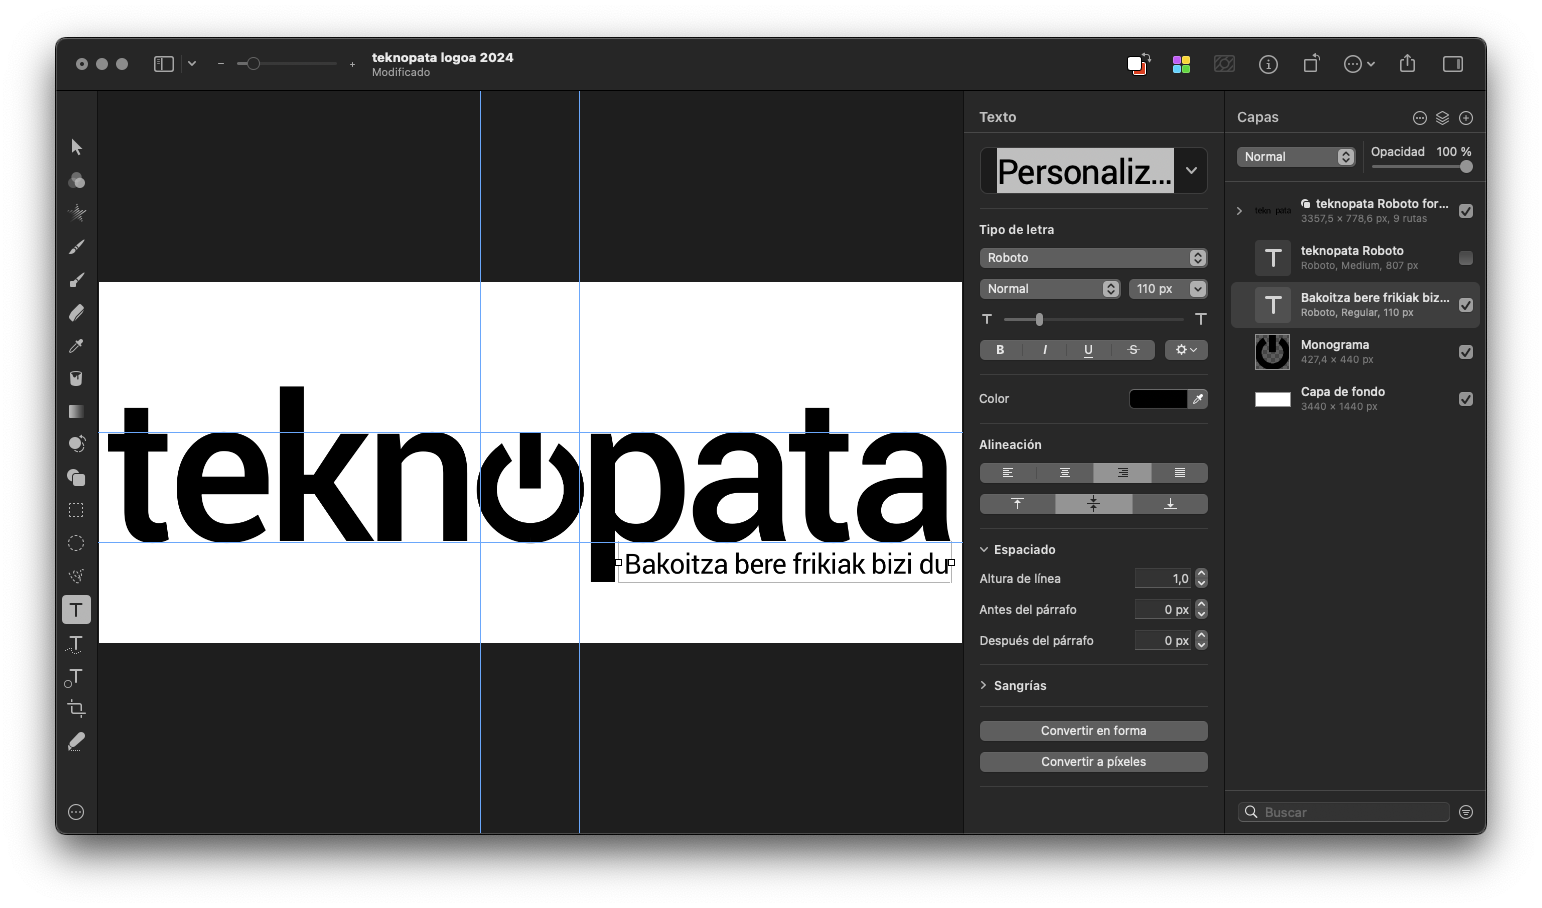 Graphic design is my passion! 🤣 21 - teknopata.eus